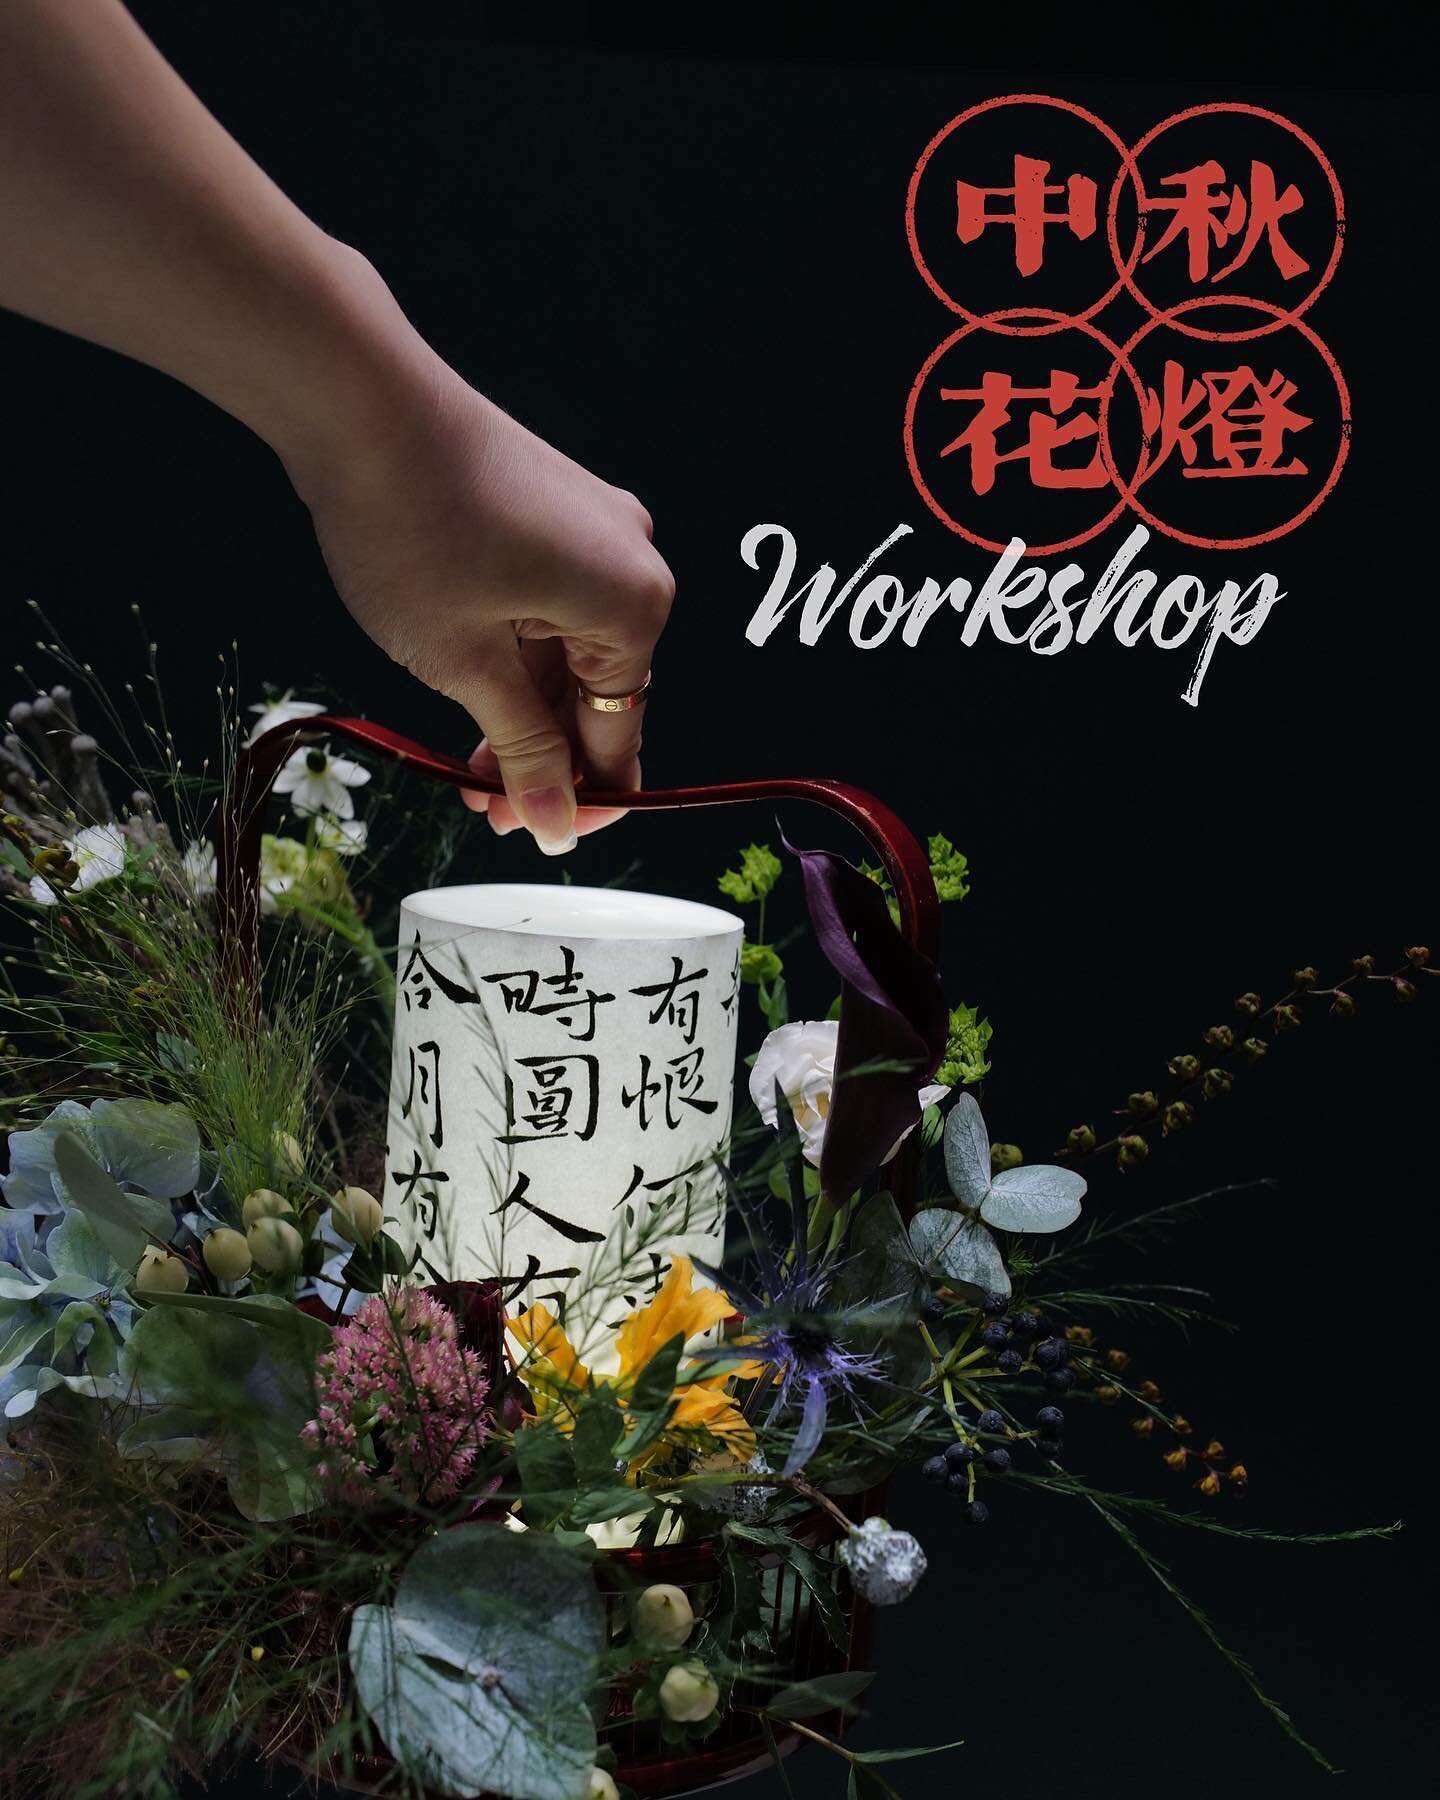 中秋花燈 | 青山書藝 Mid-autumn Lantern Floral Jamming x Chinese Calligraphy Workshop

在青山老師 @cink_shan 指導下
以魏晉小楷書寫
然後自選花材
創作出獨一無二「書藝中秋花燈」
送上圓滿的祝福 ❤️

課程時間：150分鐘
地點：黃竹坑
場次：
A) Sept 8 （星期四）4:00PM
B) Sept 8 （星期四）7:30PM
費用：HK1,680 (Sign up link in bio)

====

【取